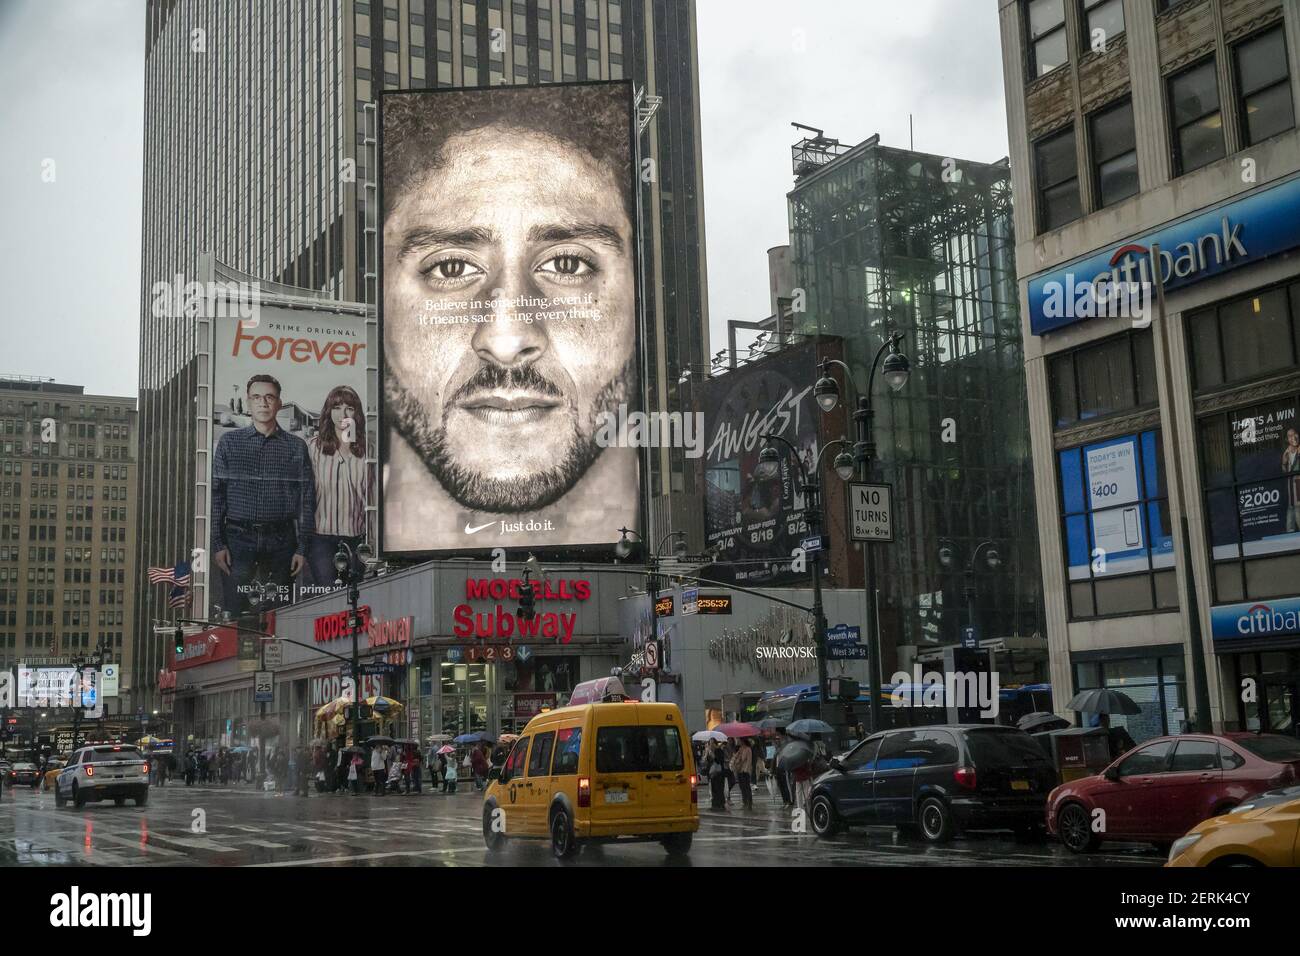 Un panneau d'affichage électronique pour les produits Nike présente Colin  Kaepernick, le quarterback américain du football qui, en protestation  contre la brutalité policière, « a pris le genou » pendant le jeu